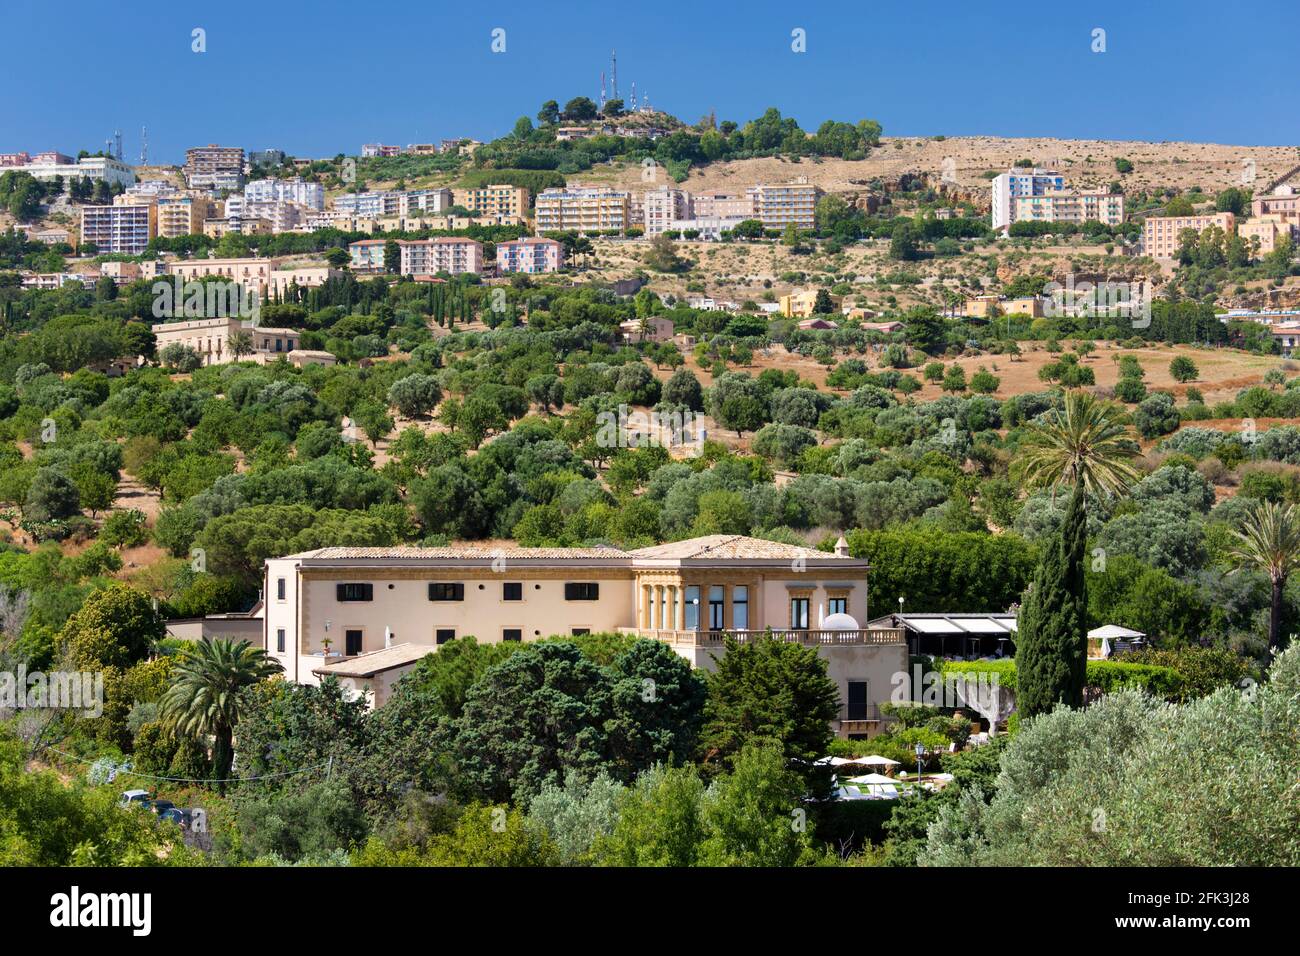 Agrigento, Sicilia, Italia. Vista sulla città attraverso il verde paesaggio di ulivi e mandorli, Valle dei Templi, Hotel Villa Athena prominente. Foto Stock